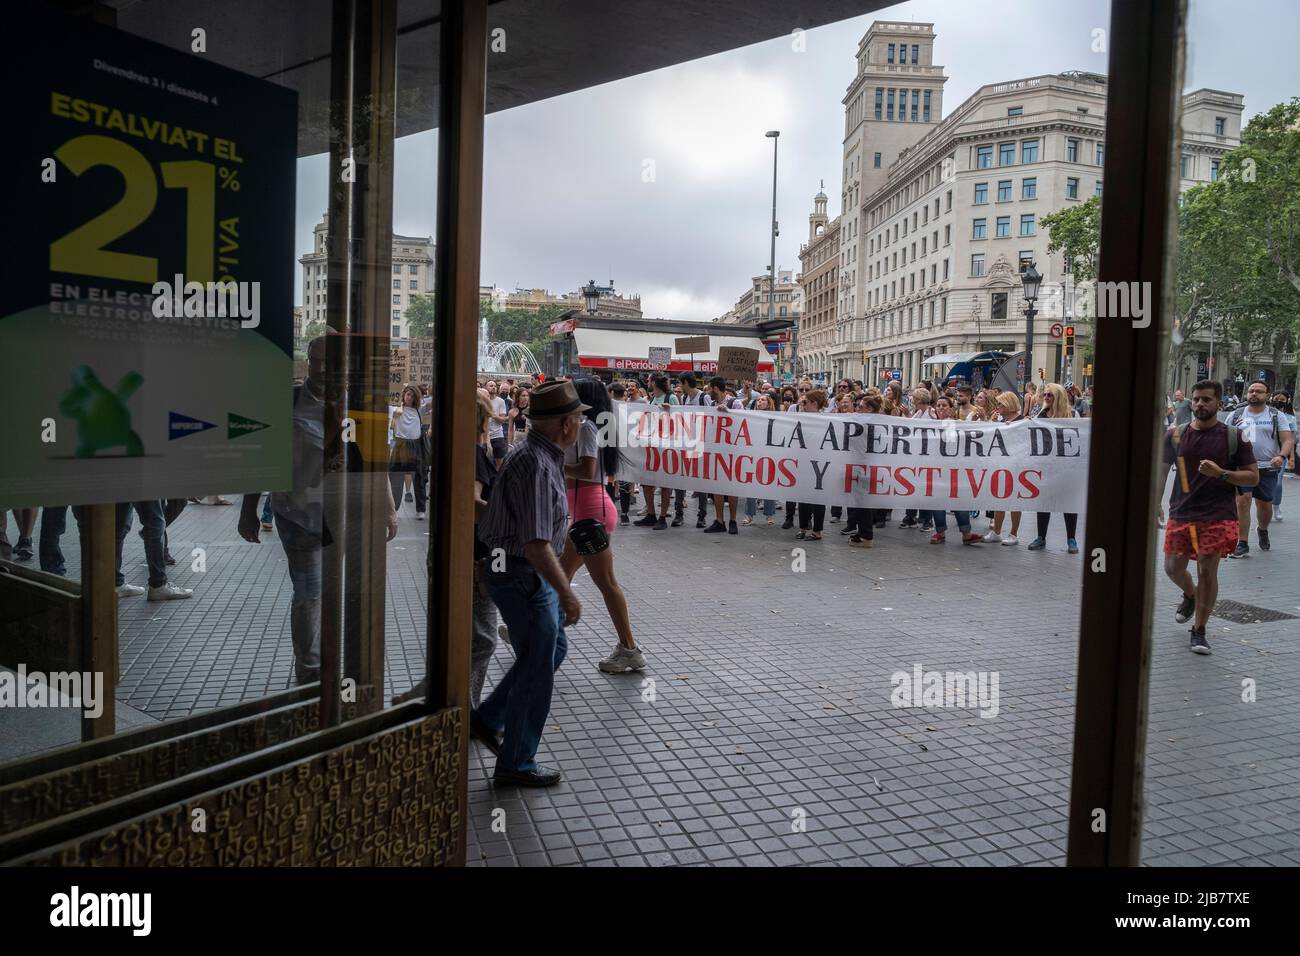 Sindicalistas y trabajadores tienen una pancarta contra la apertura comercial los domingos y frente a la puerta del establecimiento El Corte Inglés en Plaza de Catalunya. Gritando «Queremos reconciliar trabajo